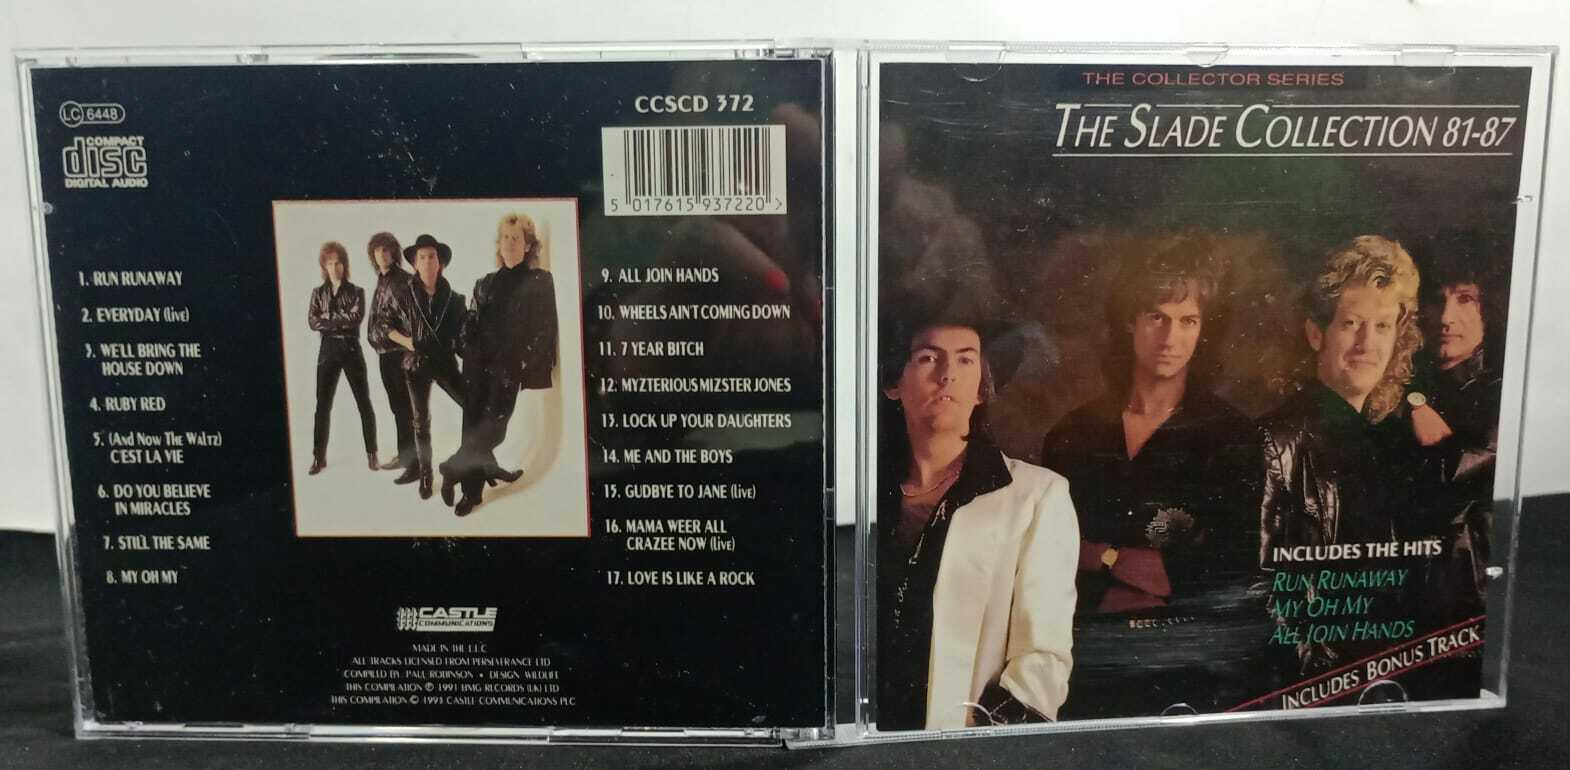 CD - Slade - The Collection 81-87 (eu)